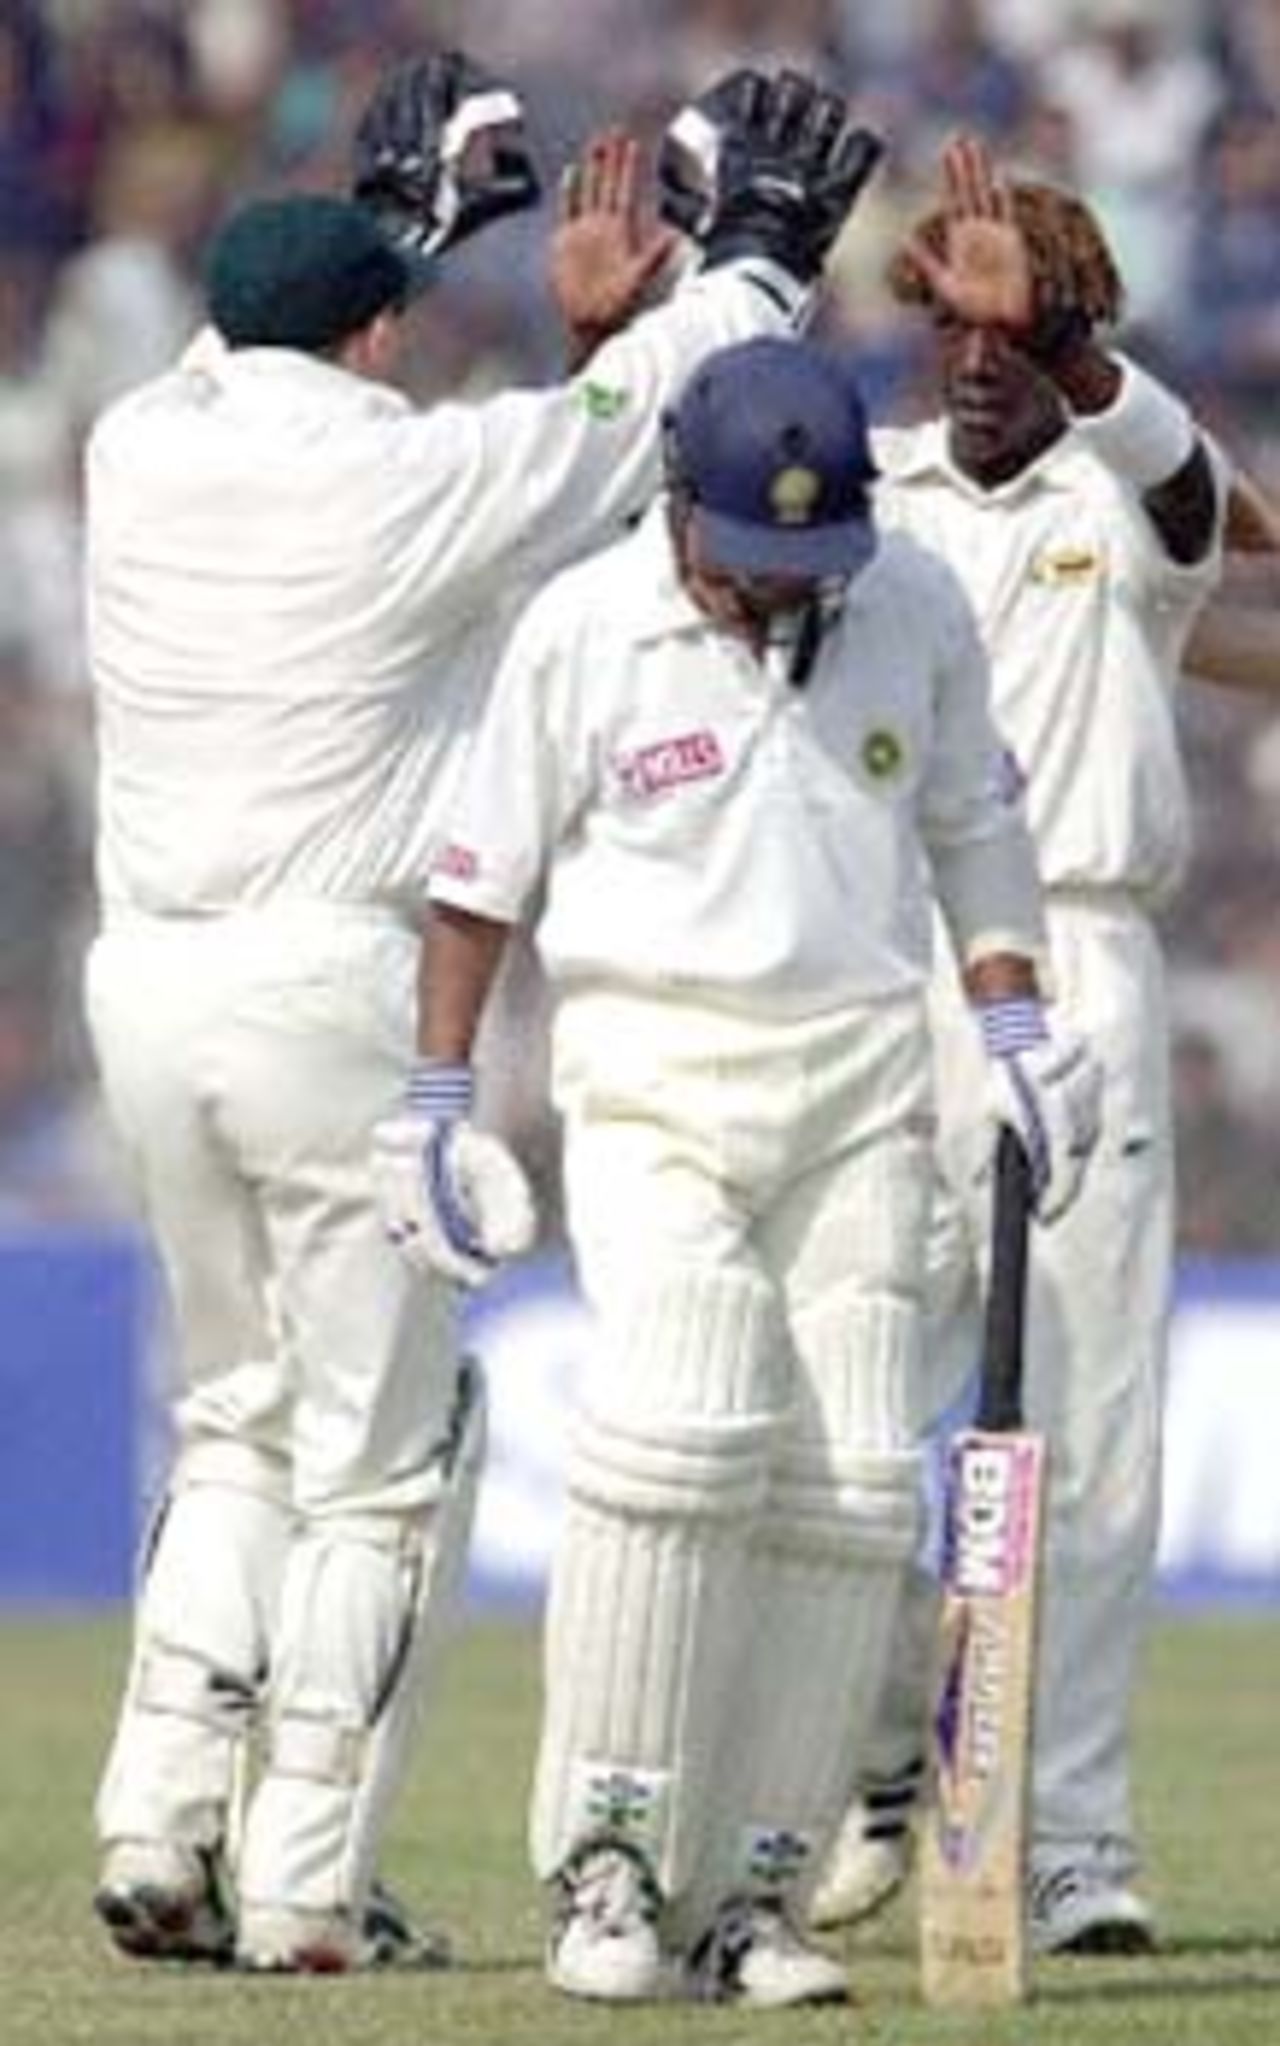 Flower congratulates Olonga on picking up the wicket of SS Das. Zimbabwe in India 2000/01, 1st Test, India v Zimbabwe Feroz Shah Kotla, Delhi, 18-22 November 2000 (Day 3)